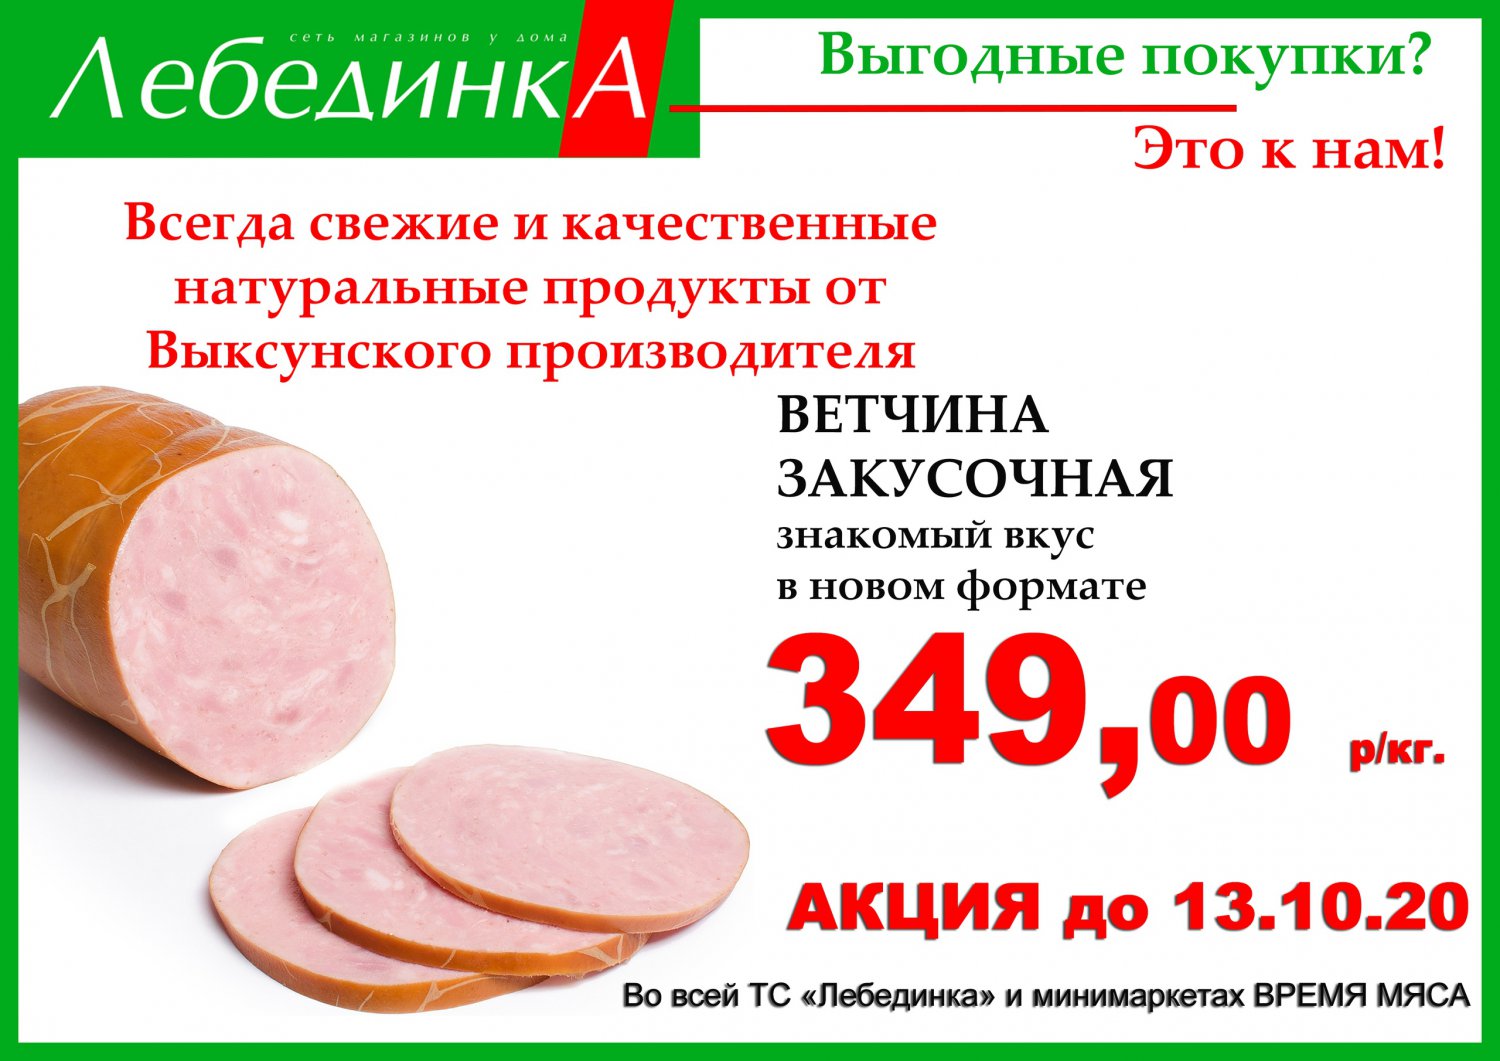 Ветчина «Закусочная»: 349 рублей/кг в магазинах «Лебединка»